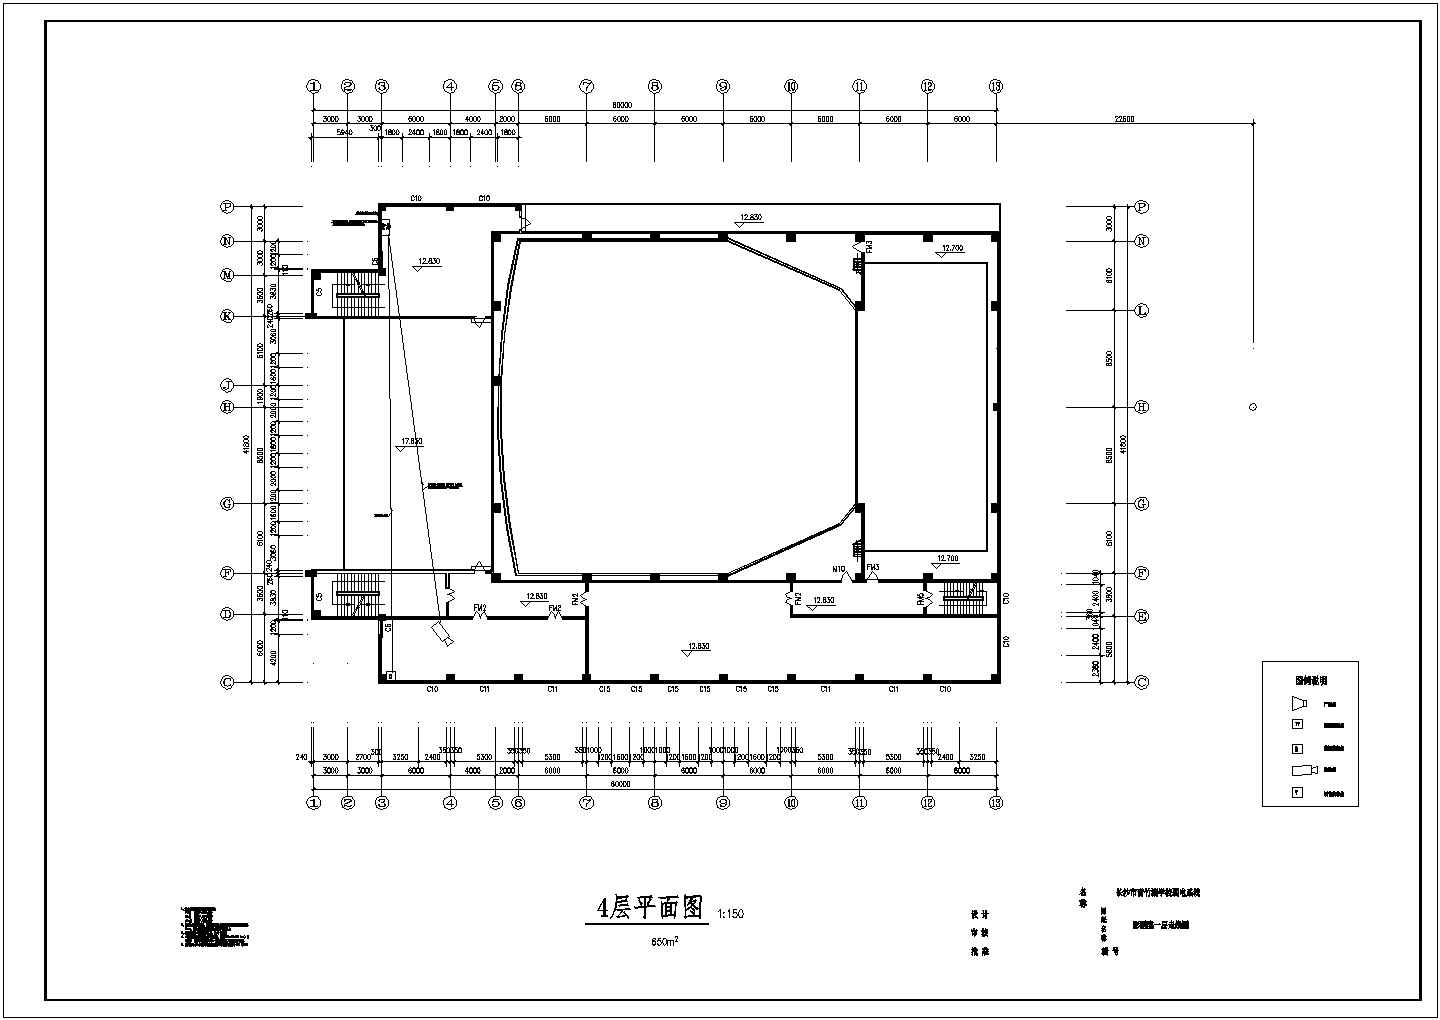 长60米 宽47.8米 4层6956平米影剧院建筑平面图【各层平面走线图】